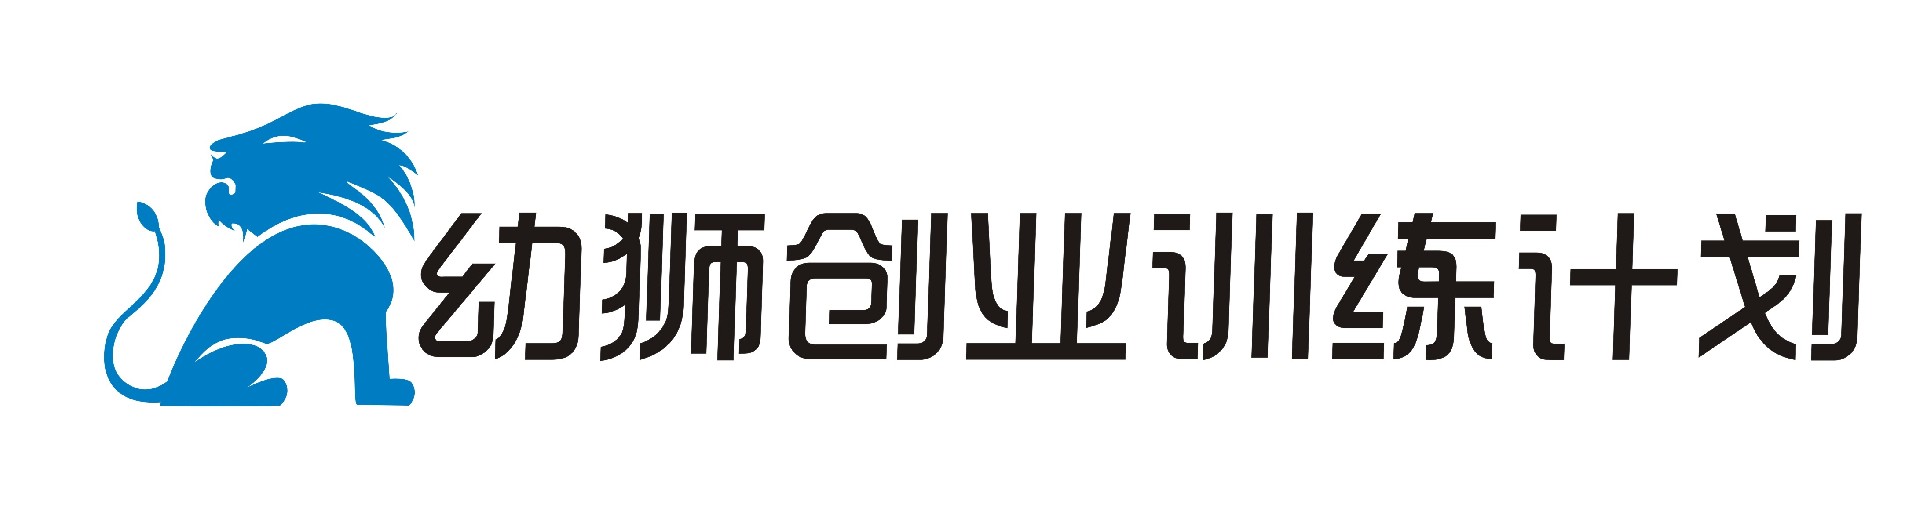 幼狮logo的副本.JPG